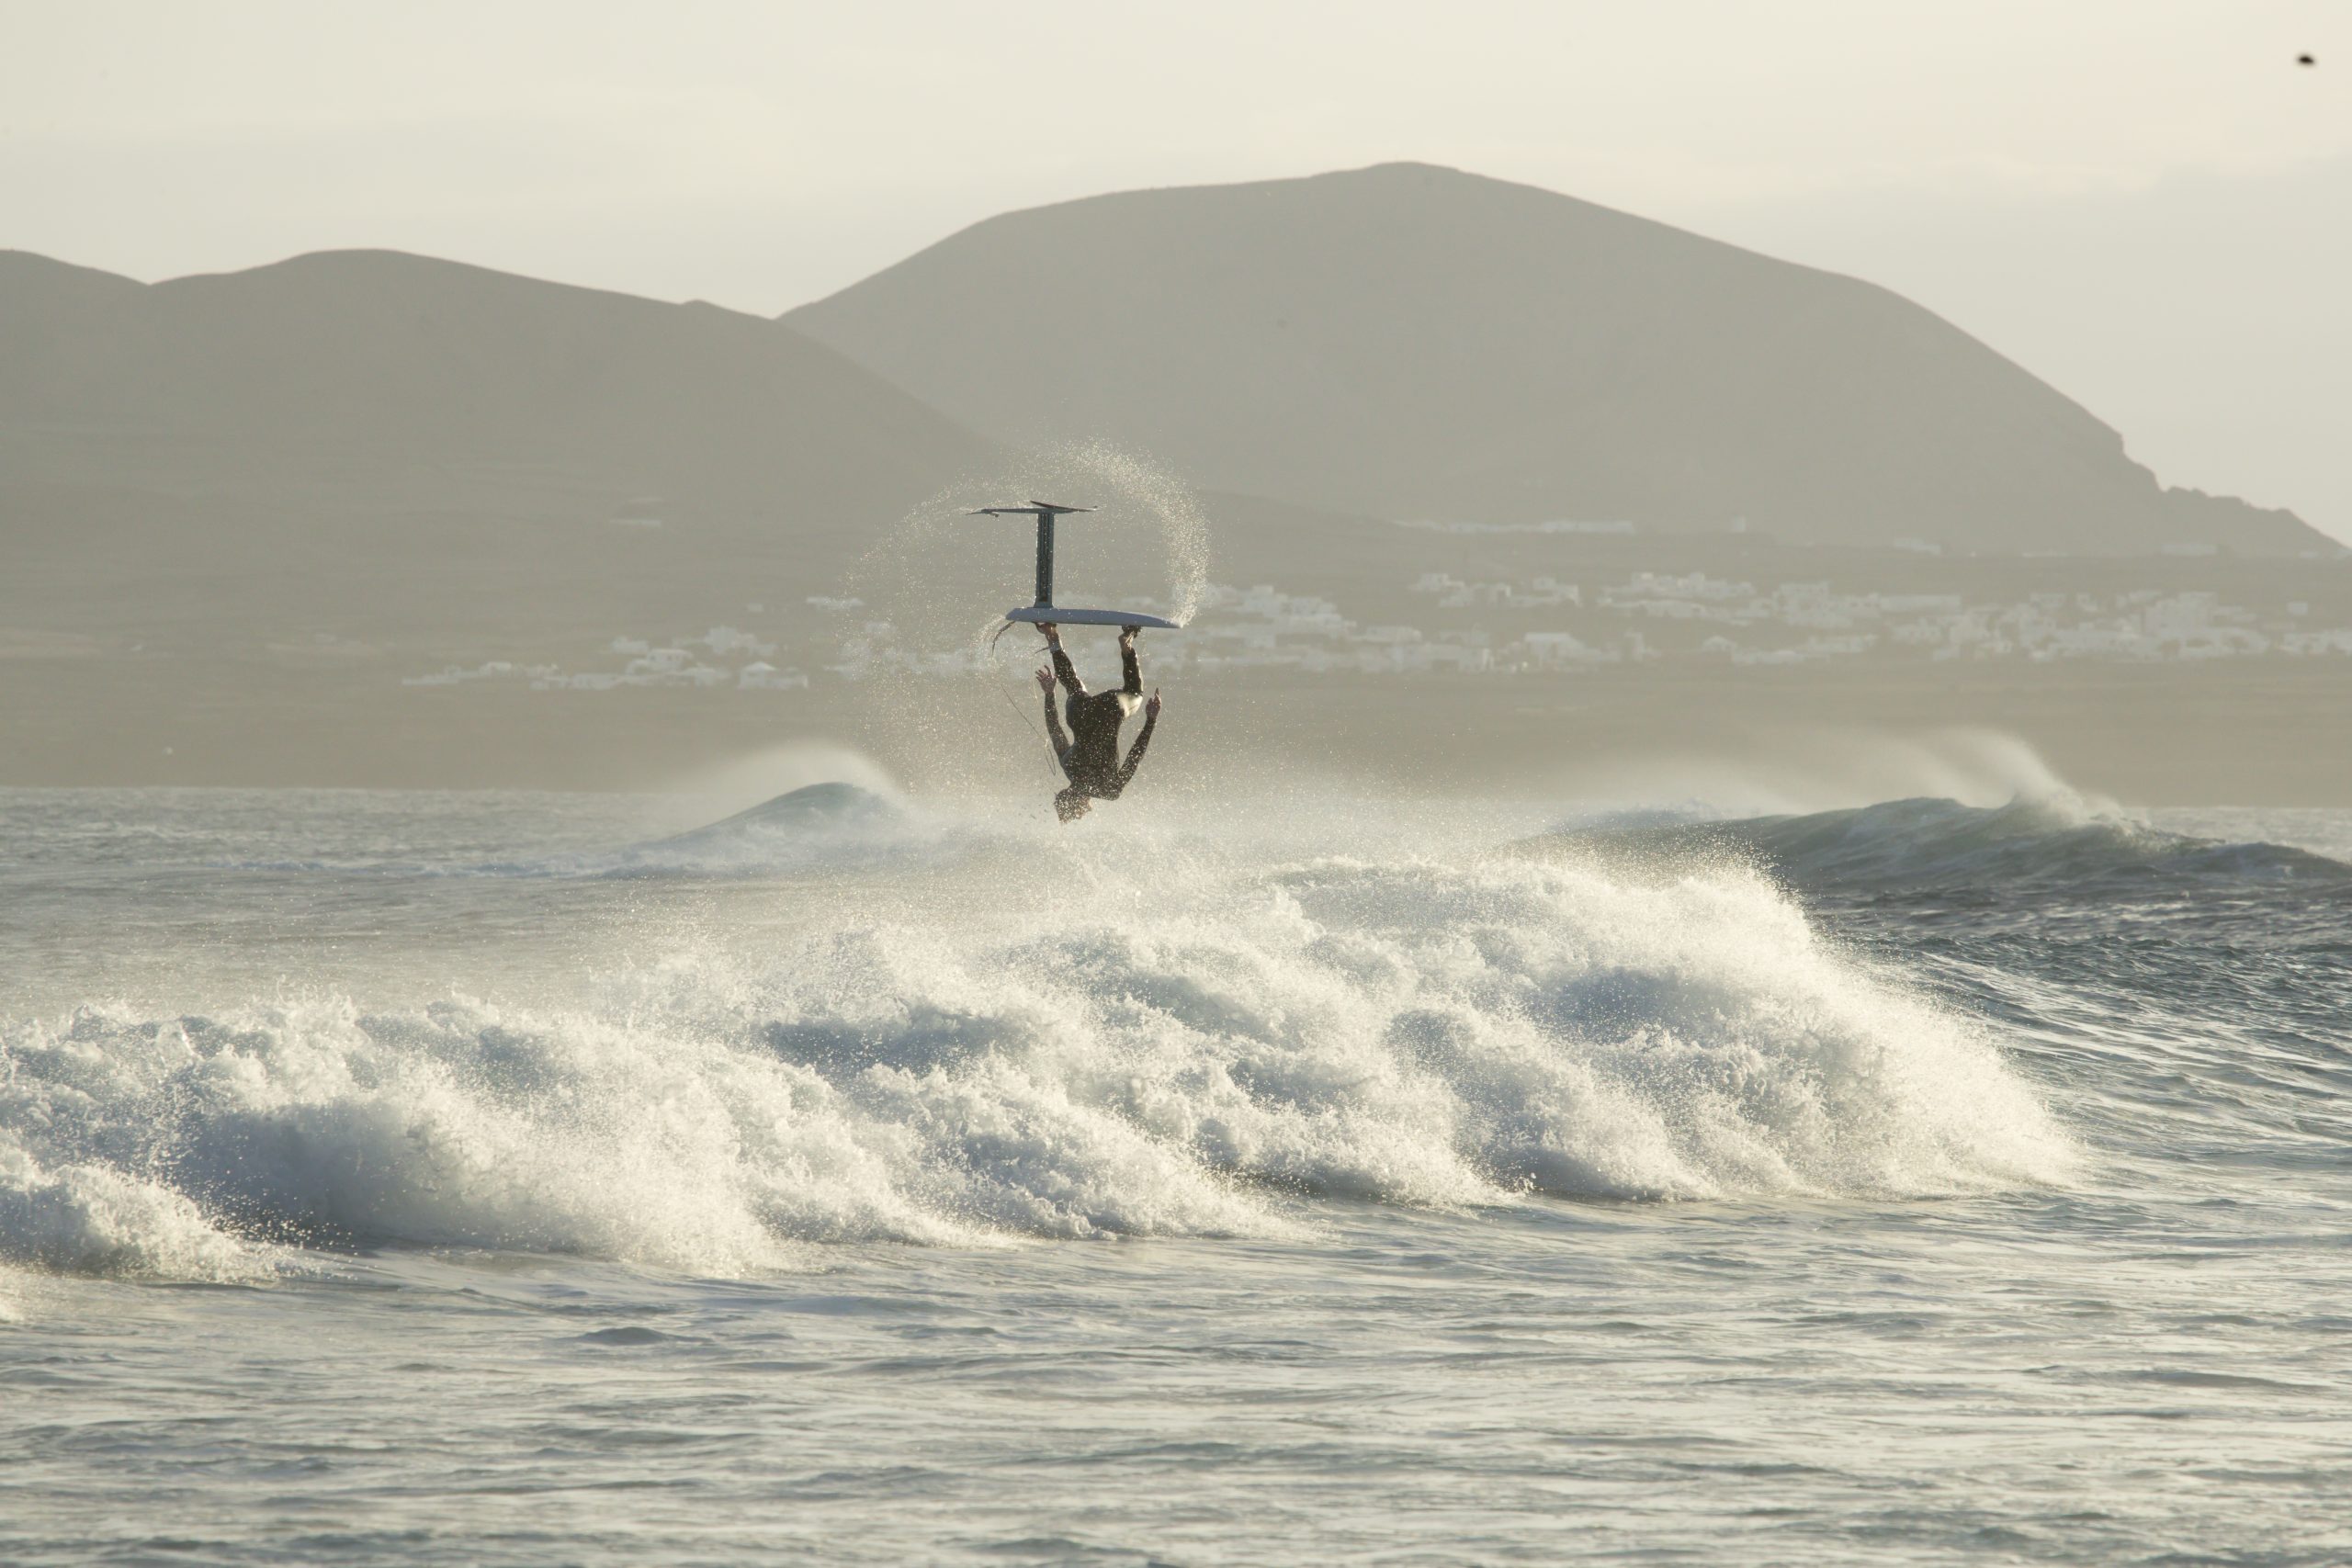 Acessórios para Boardsports - Surf Sup e Wind • Actual Acessórios